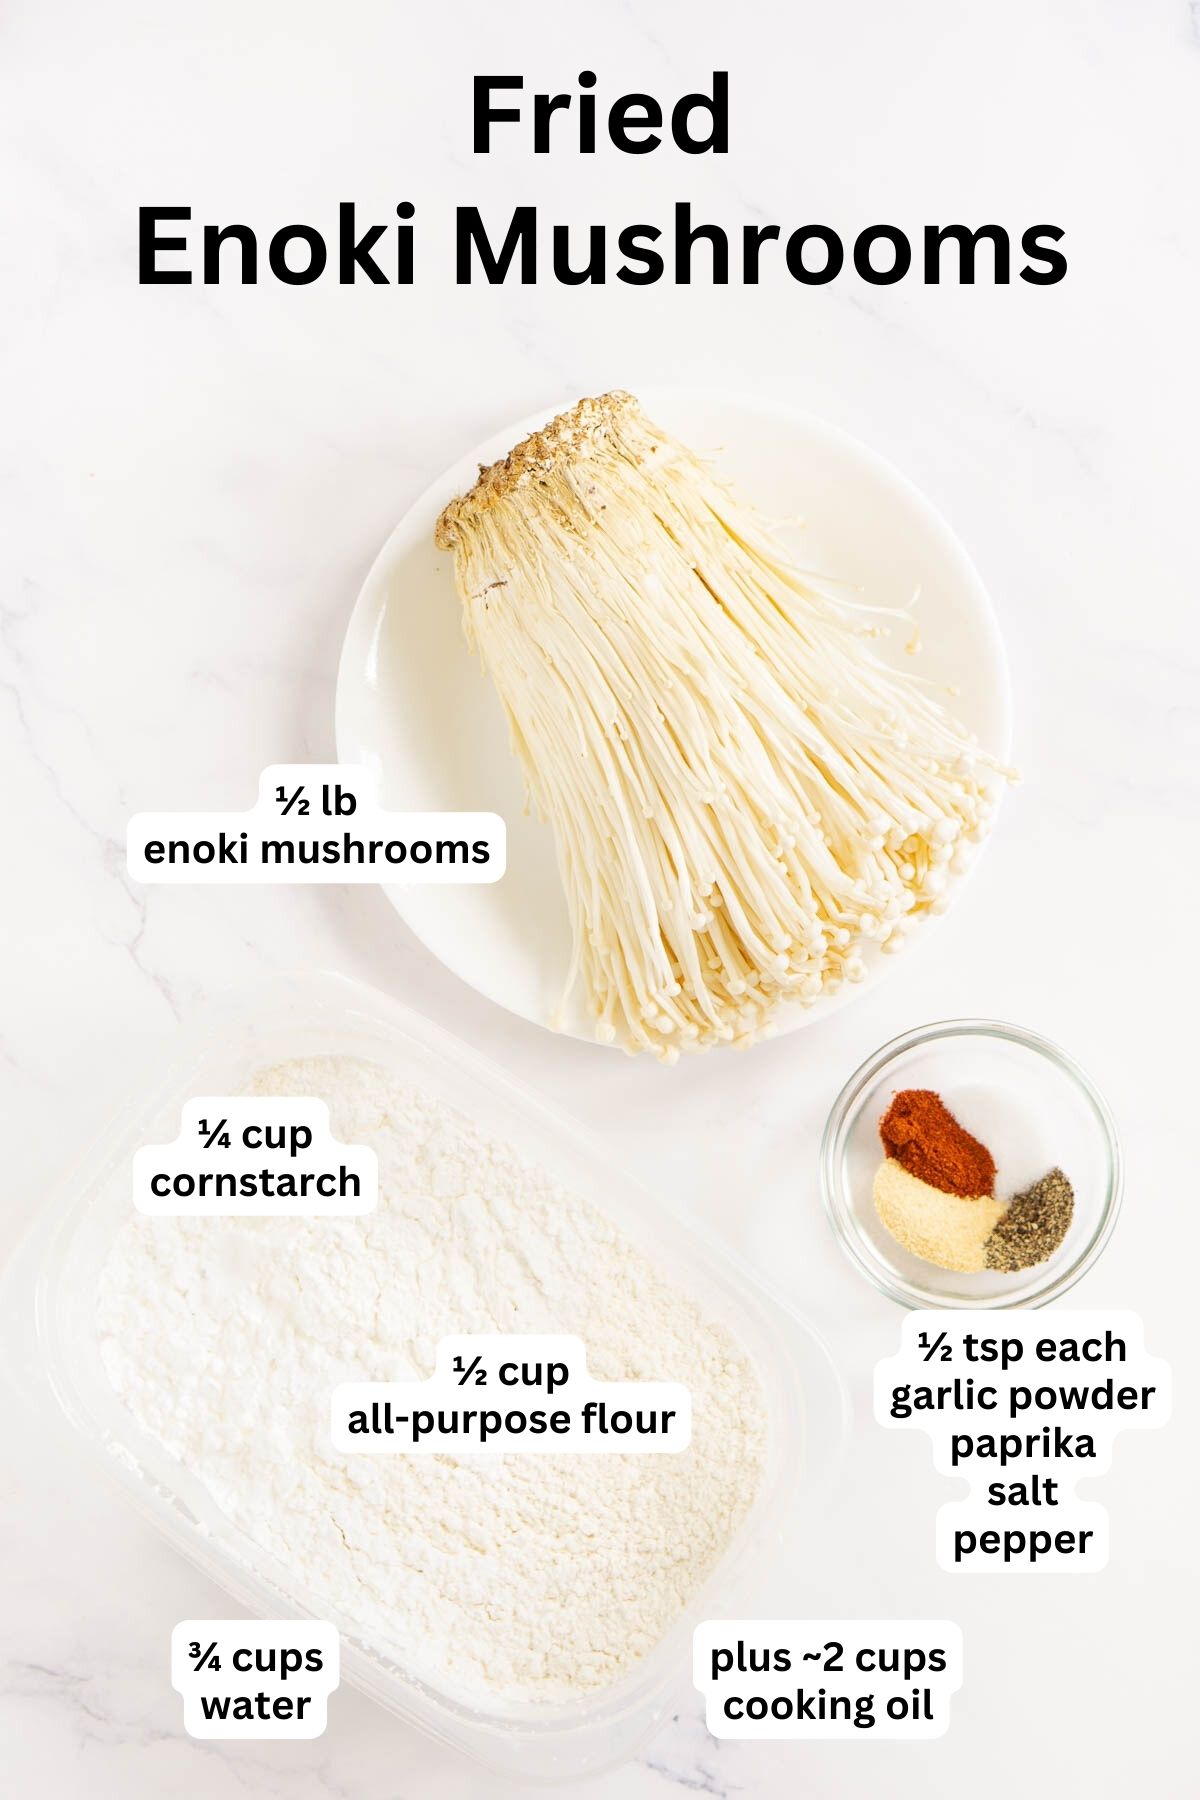 Ingredients for fried enoki mushrooms